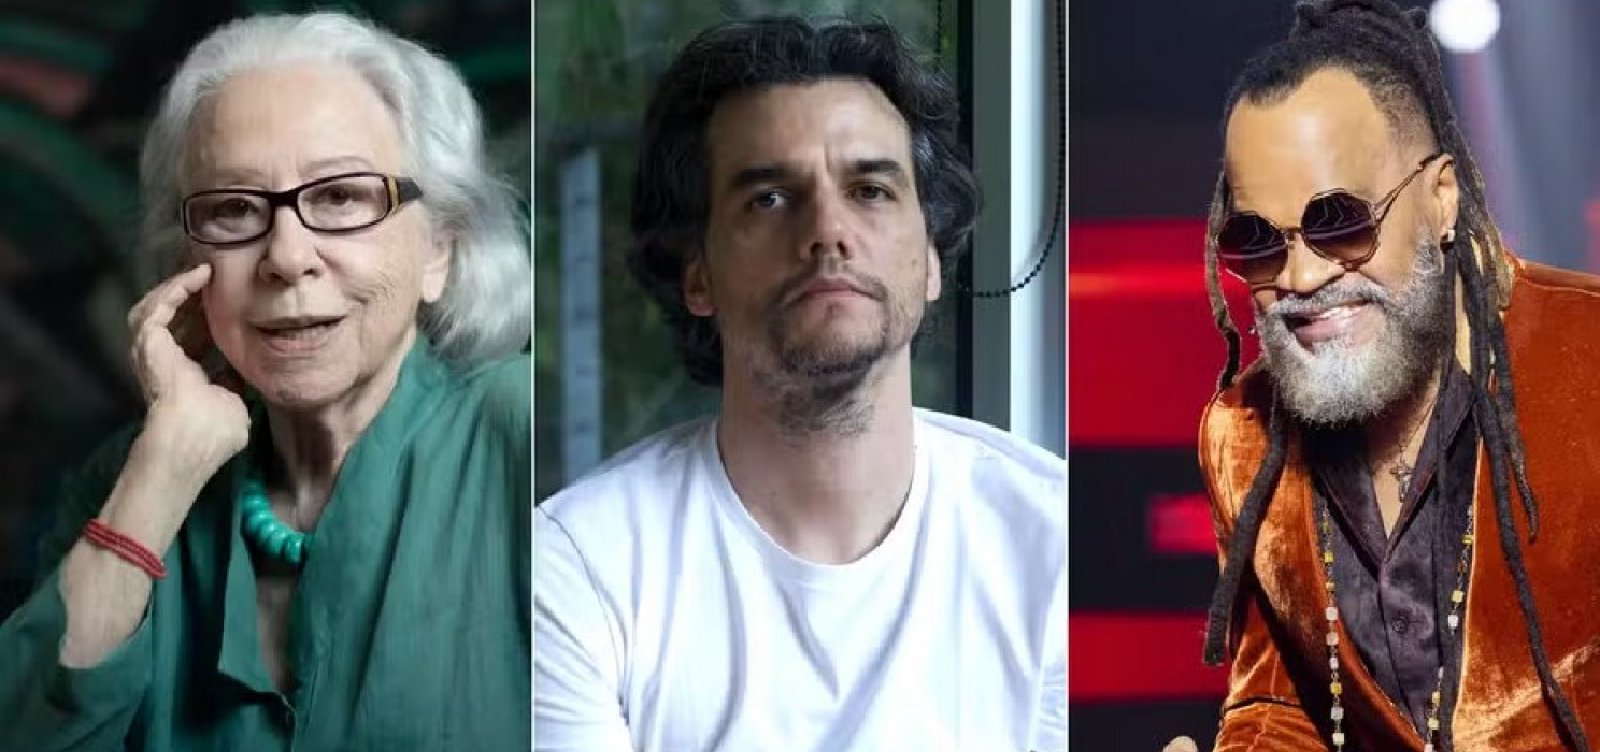 Wagner Moura, Carlinhos Brown e Fernanda Montenegro: veja os brasileiros que votam no Oscar